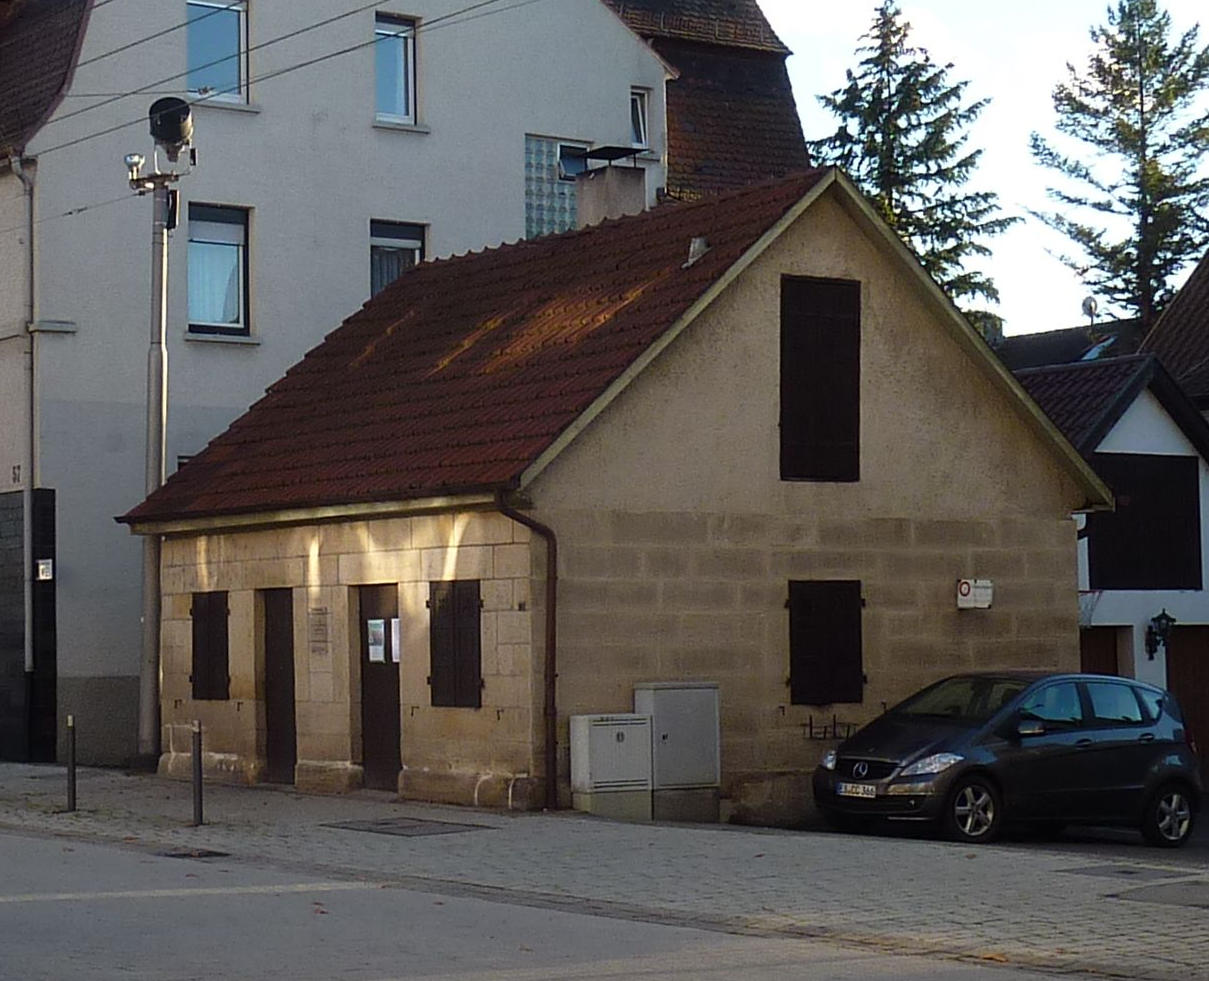 Backhaus in Mettingen